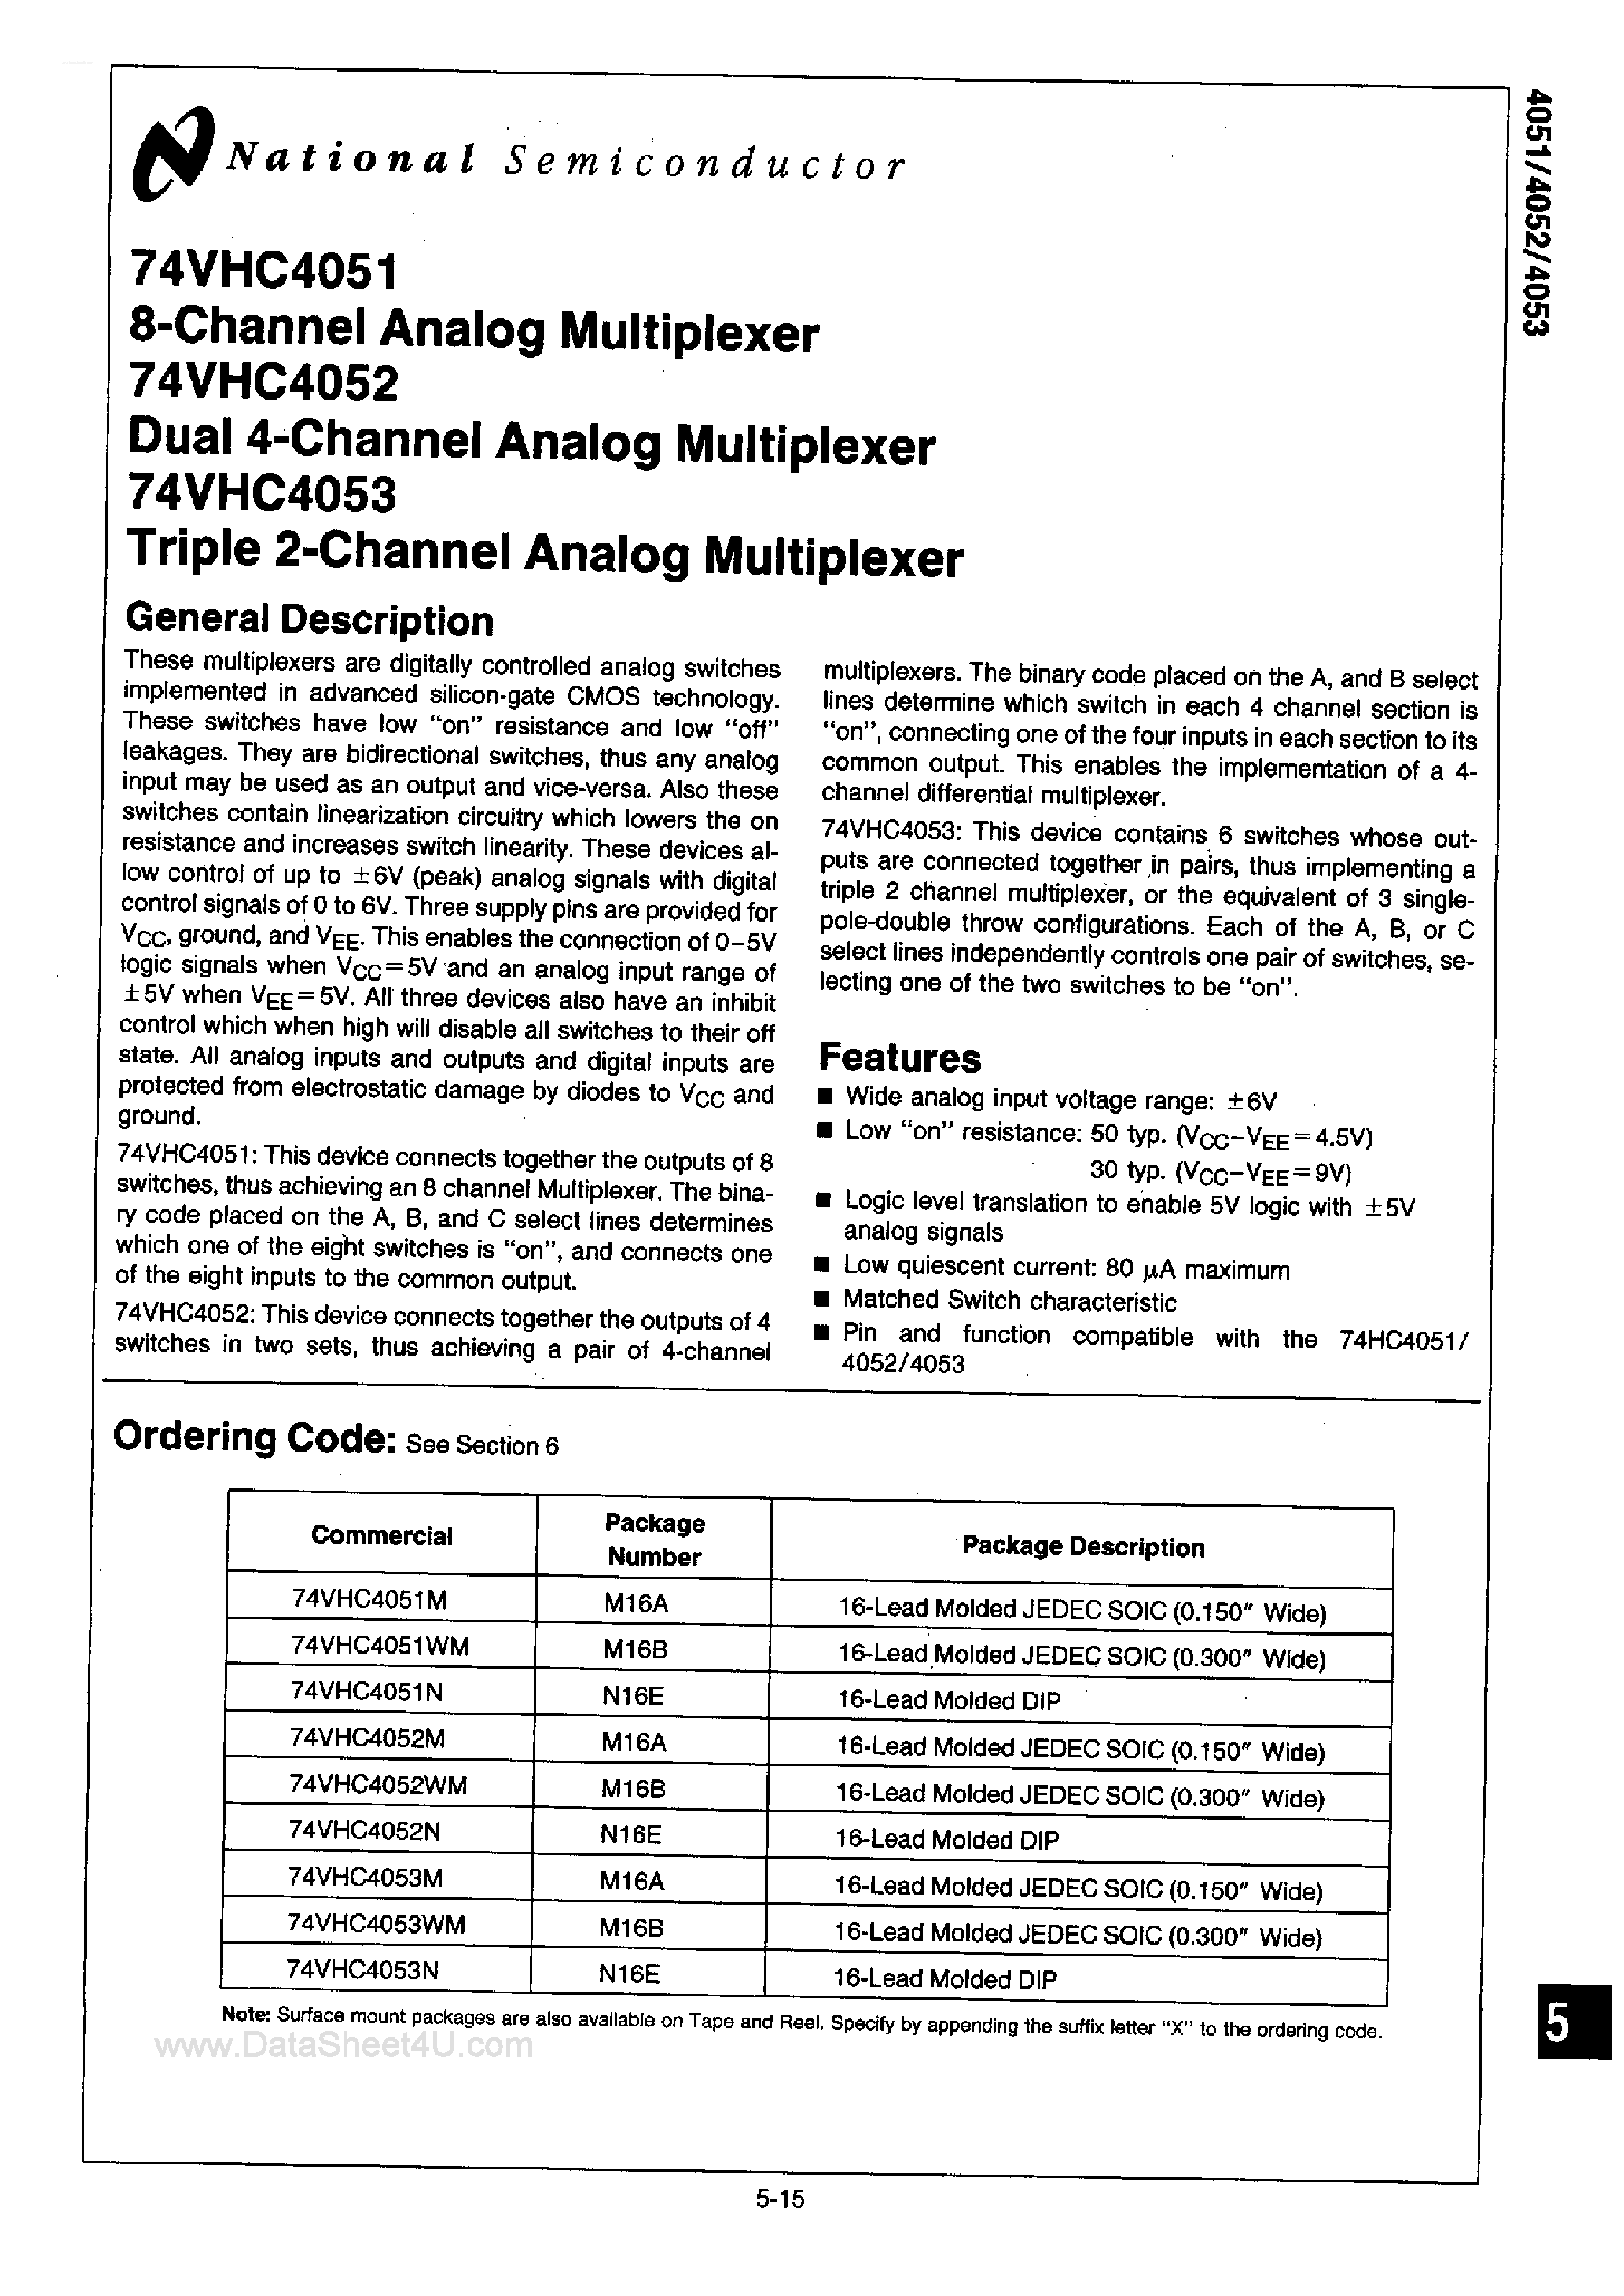 Datasheet 74VHC4051 - (74VHC4051 - 74VHC4053) Analog Multiplexer page 1